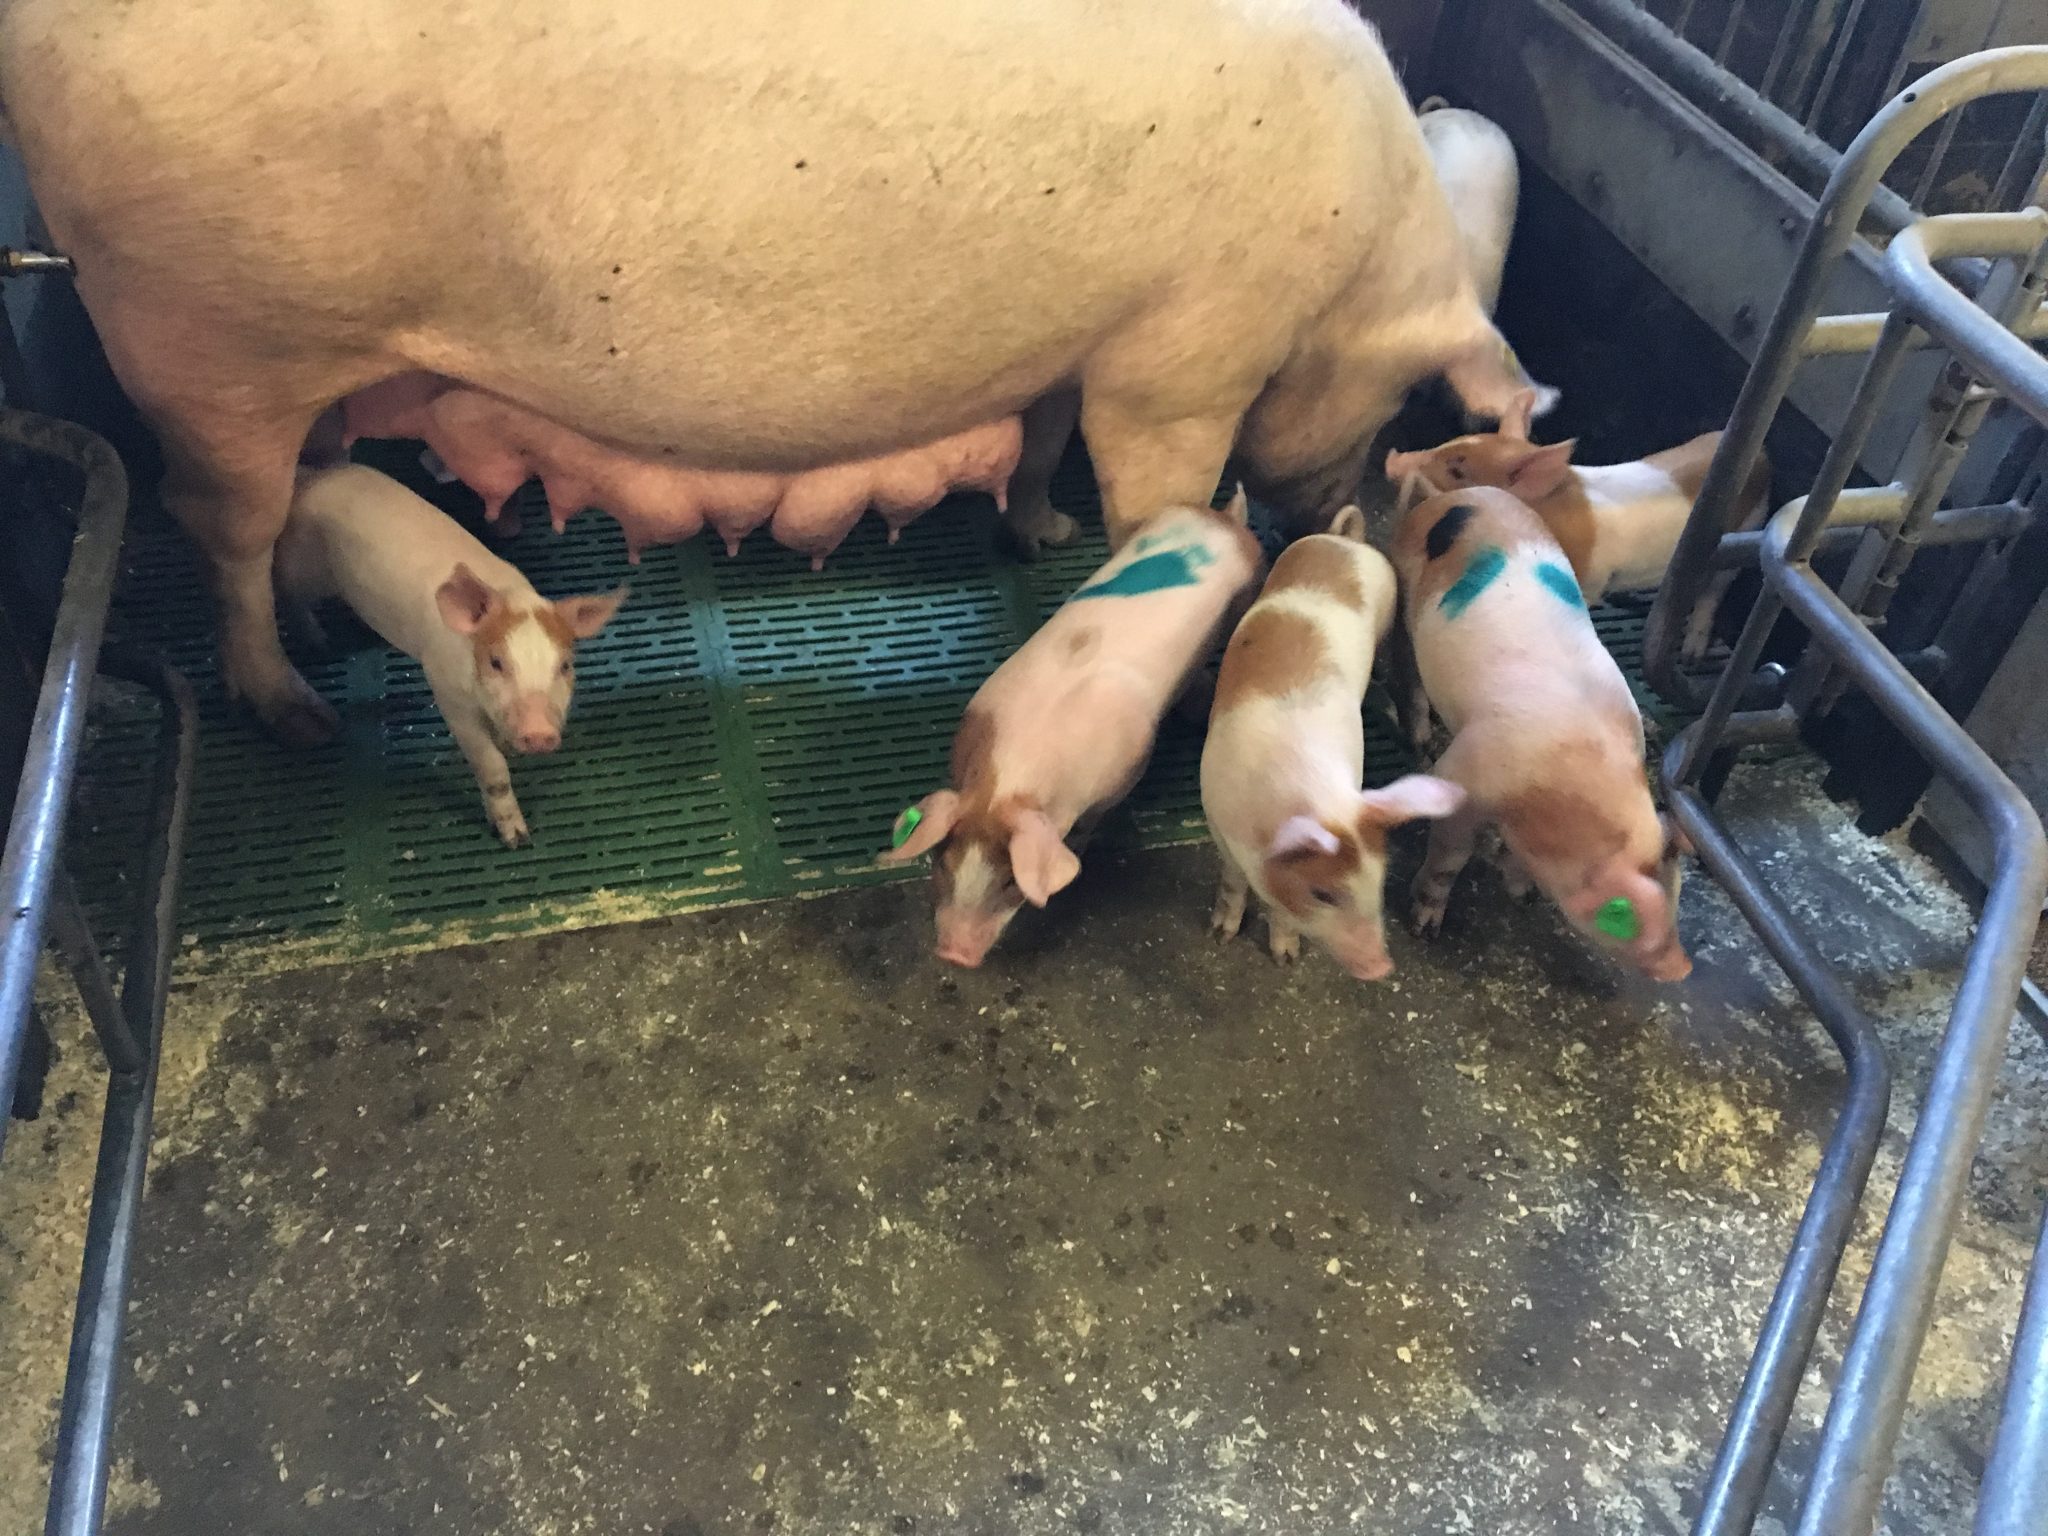 Purke med fire grisunger i en grisebinge